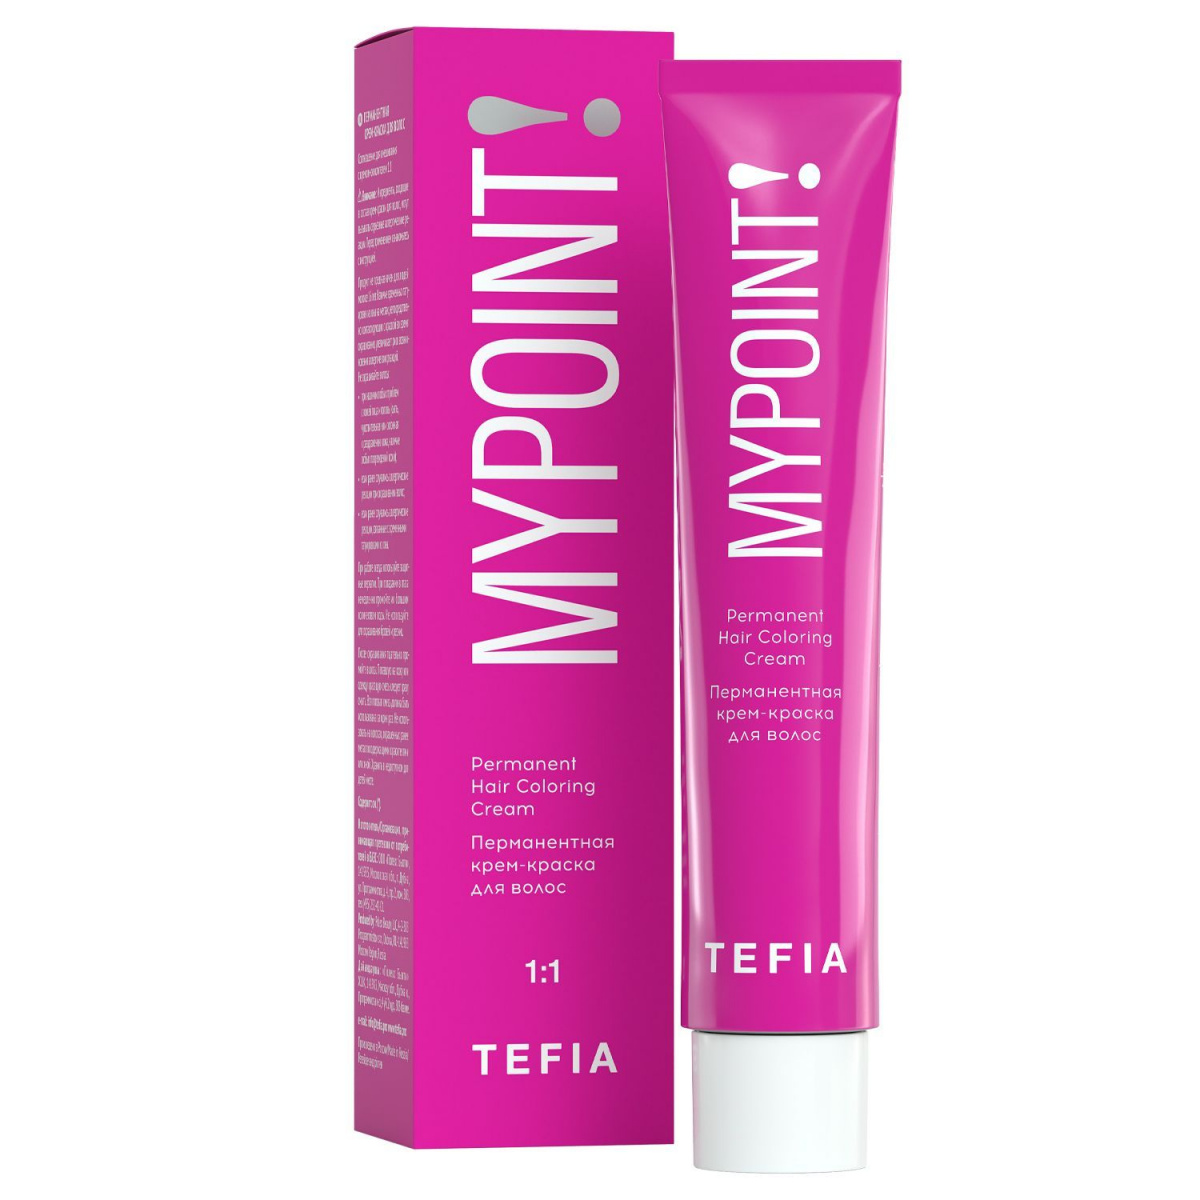 Tefia Mypoint - Перманентная крем-краска для волос 0.0A корректор для рассветления уровня тона 60 мл Tefia (Италия) купить по цене 197 руб.